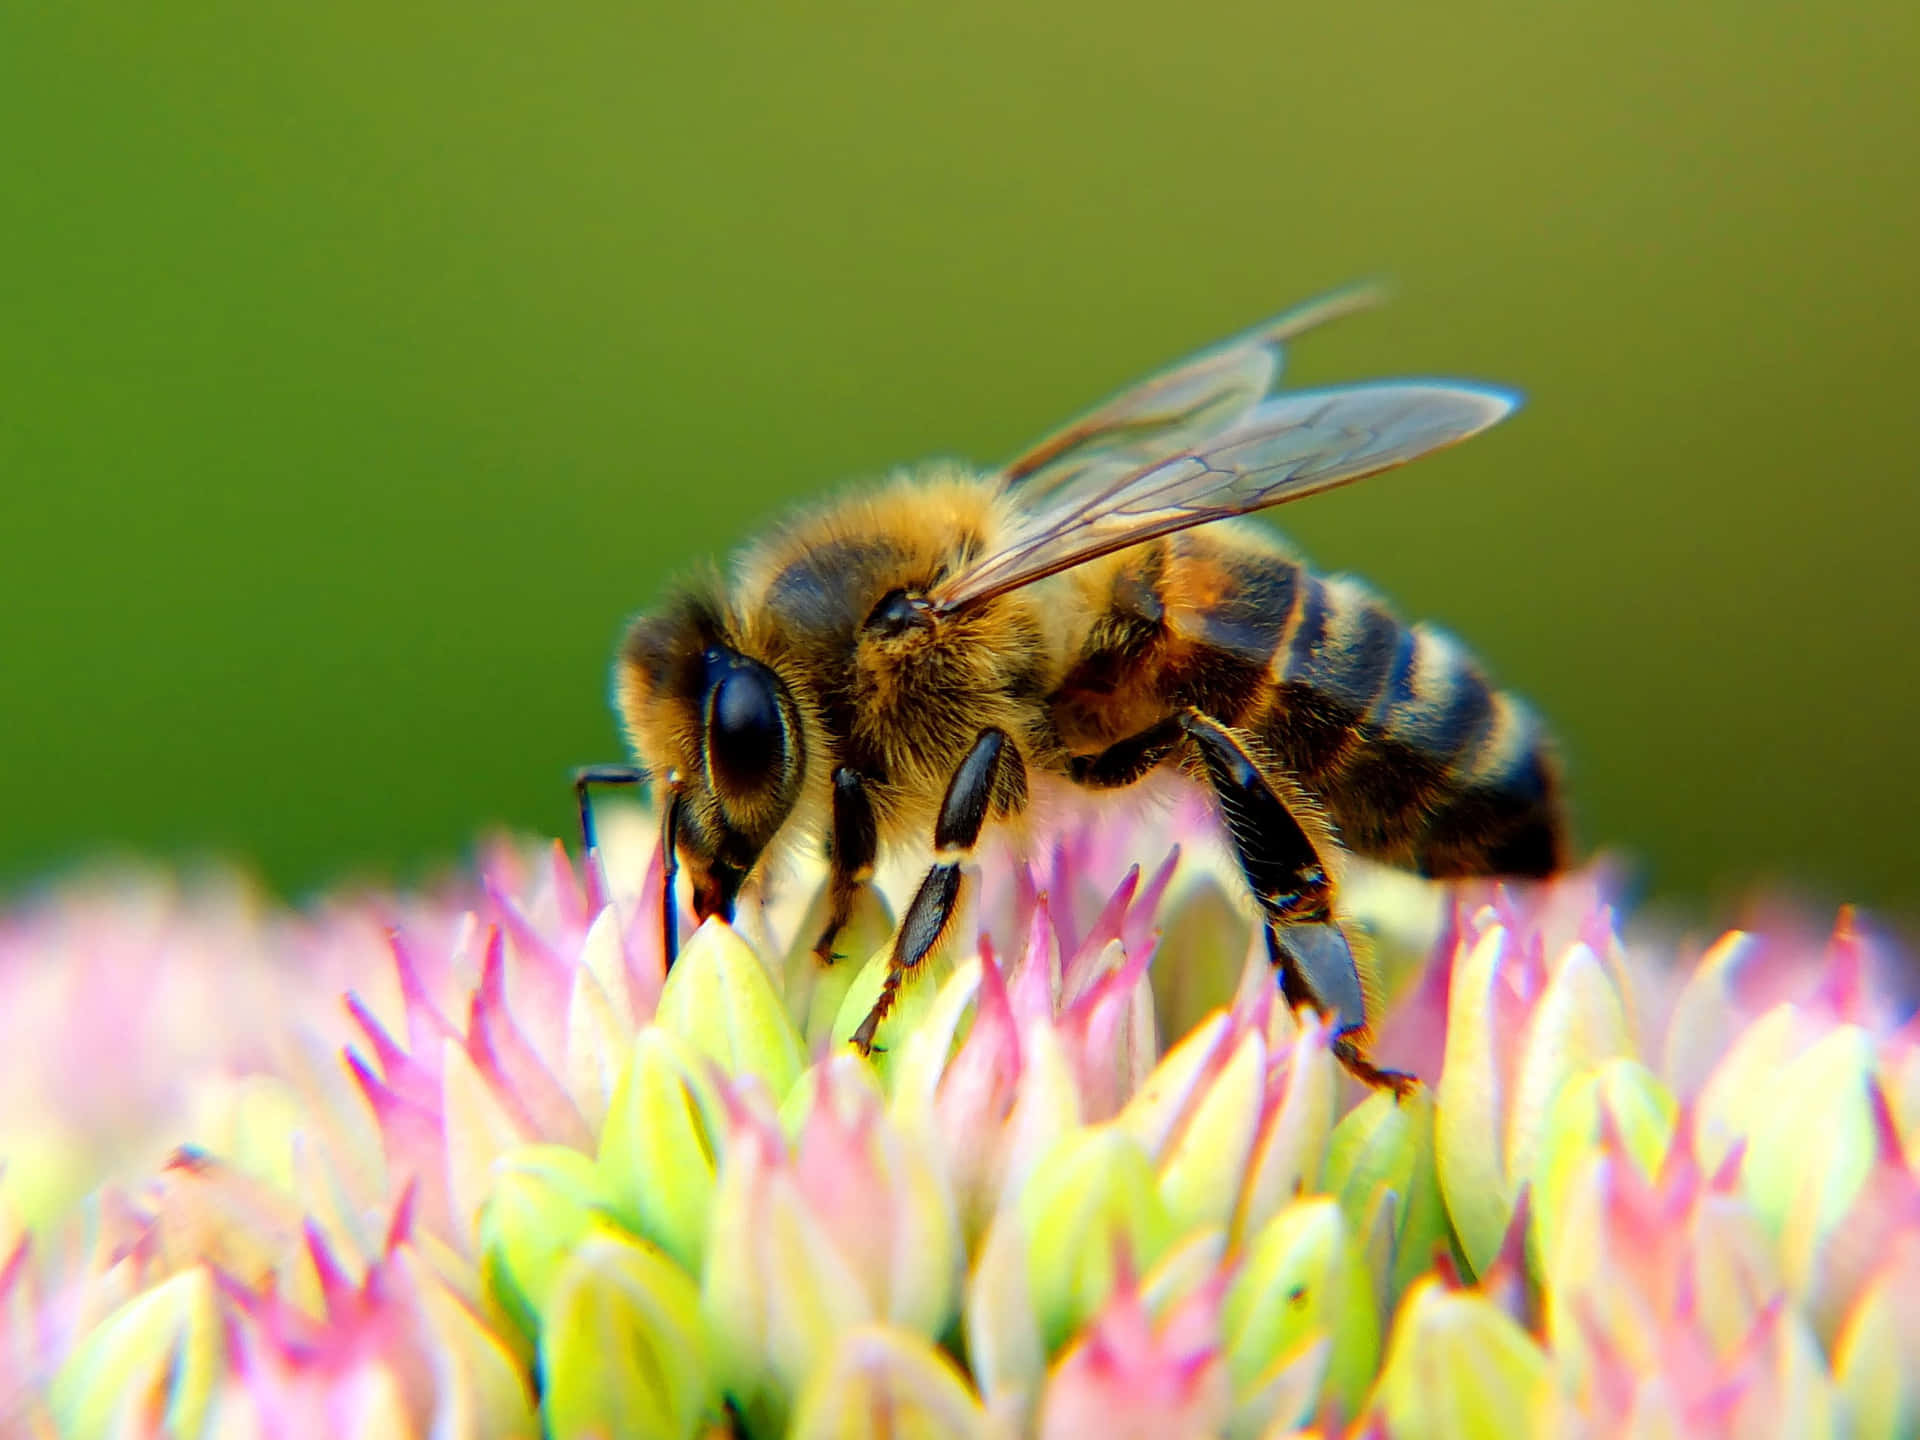 Billeder af bier strømmer over skærmen.